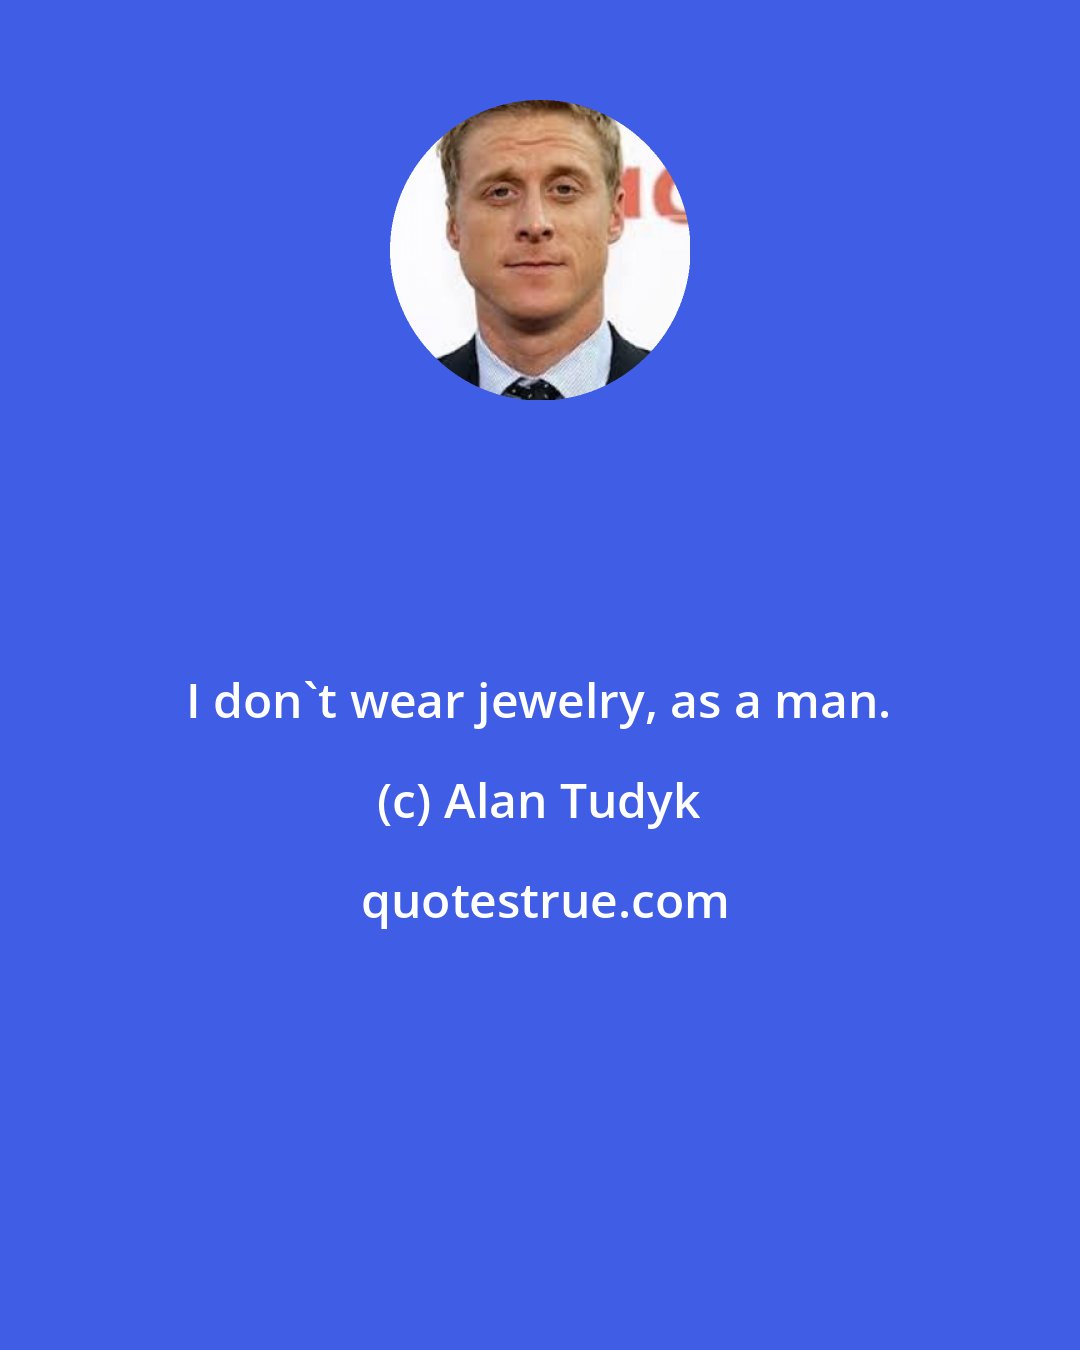 Alan Tudyk: I don't wear jewelry, as a man.